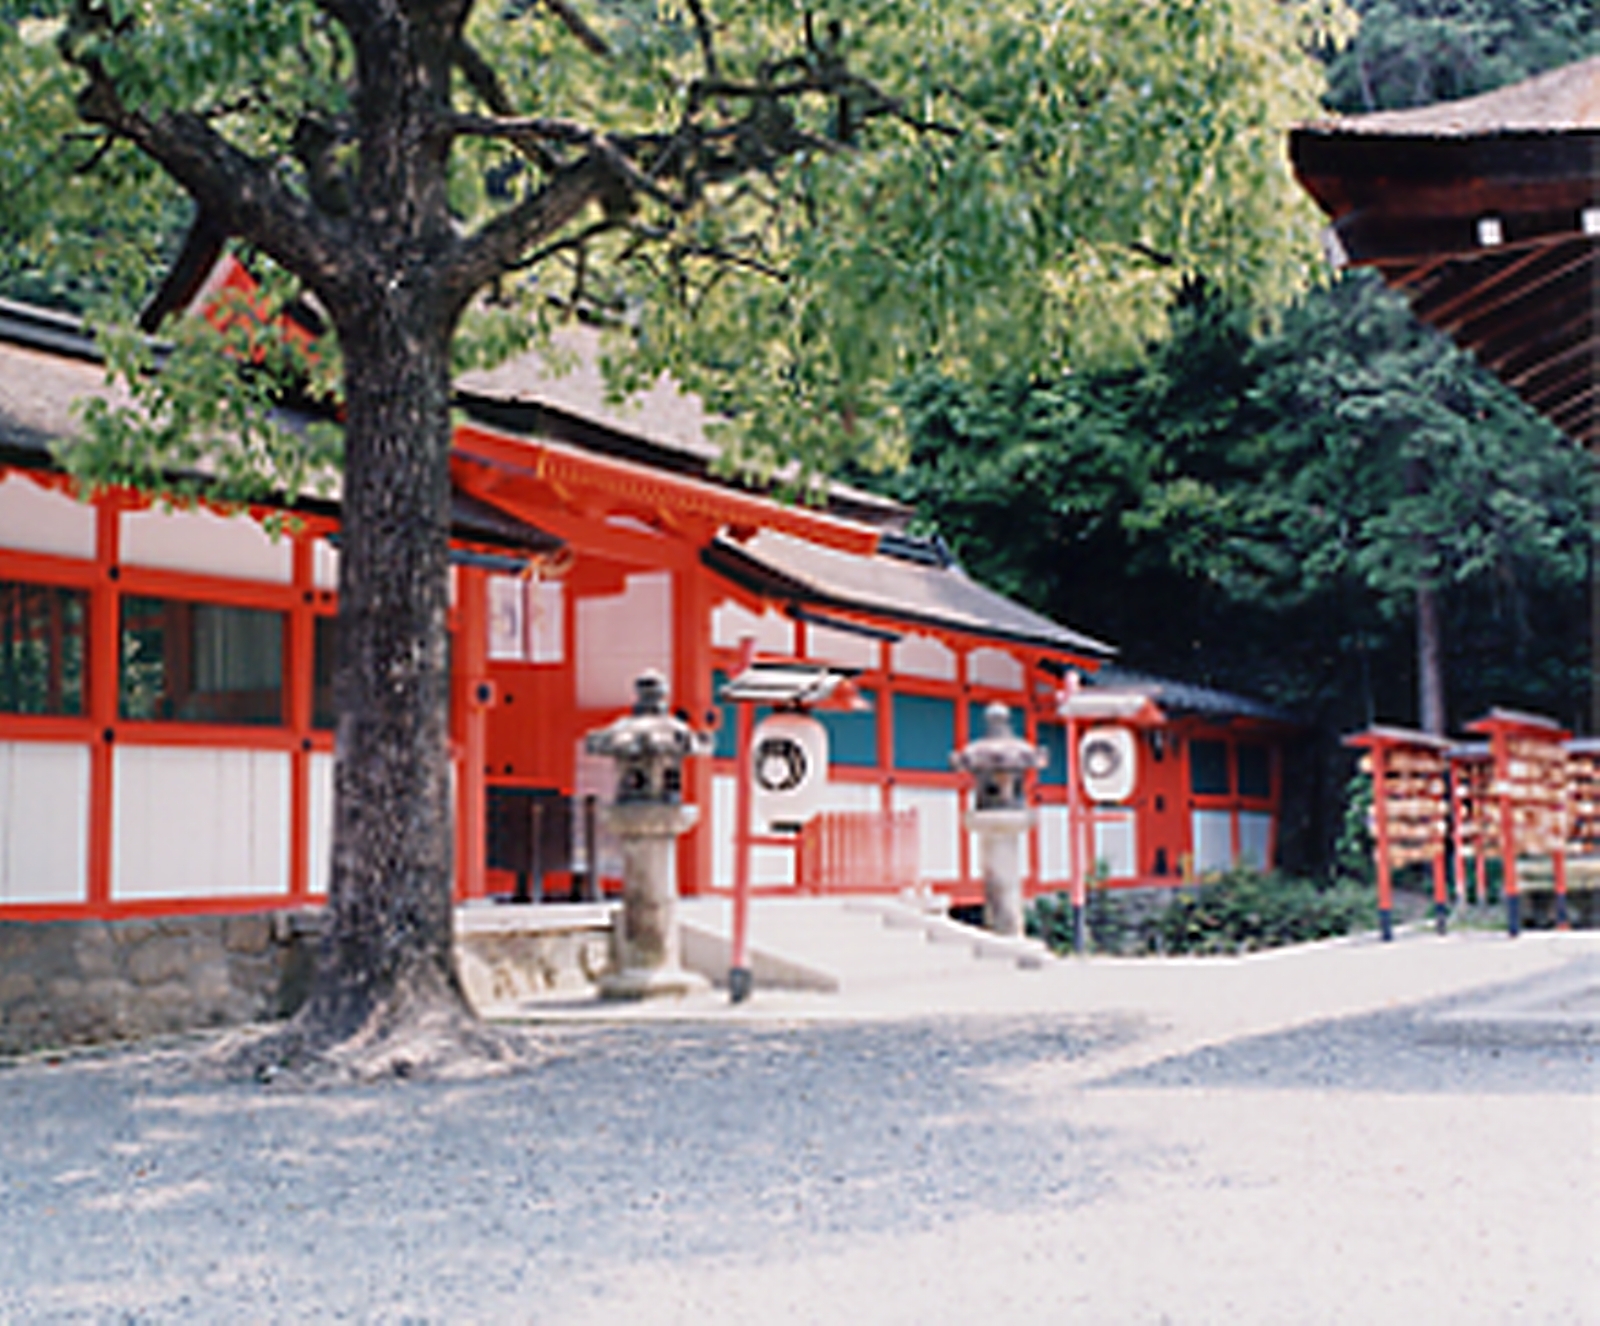 吉田 神社